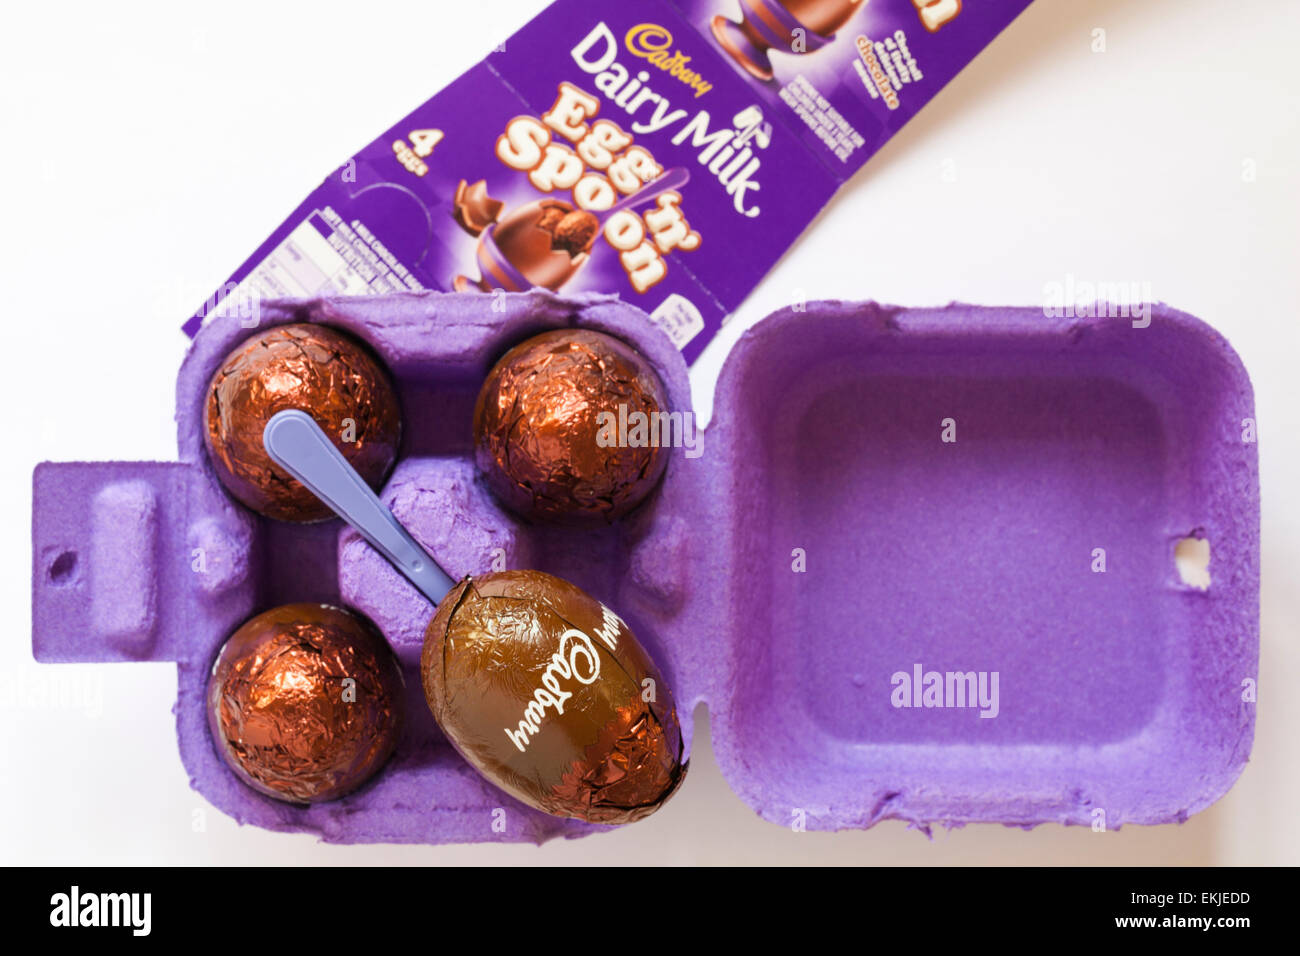 Scatola in cartone della Cadbury Dairy Milk uovo 'n' Spoon - choc-pieno di soffici deliziosa mousse al cioccolato aperto per mostrare i contenuti - Pronto per la Pasqua Foto Stock